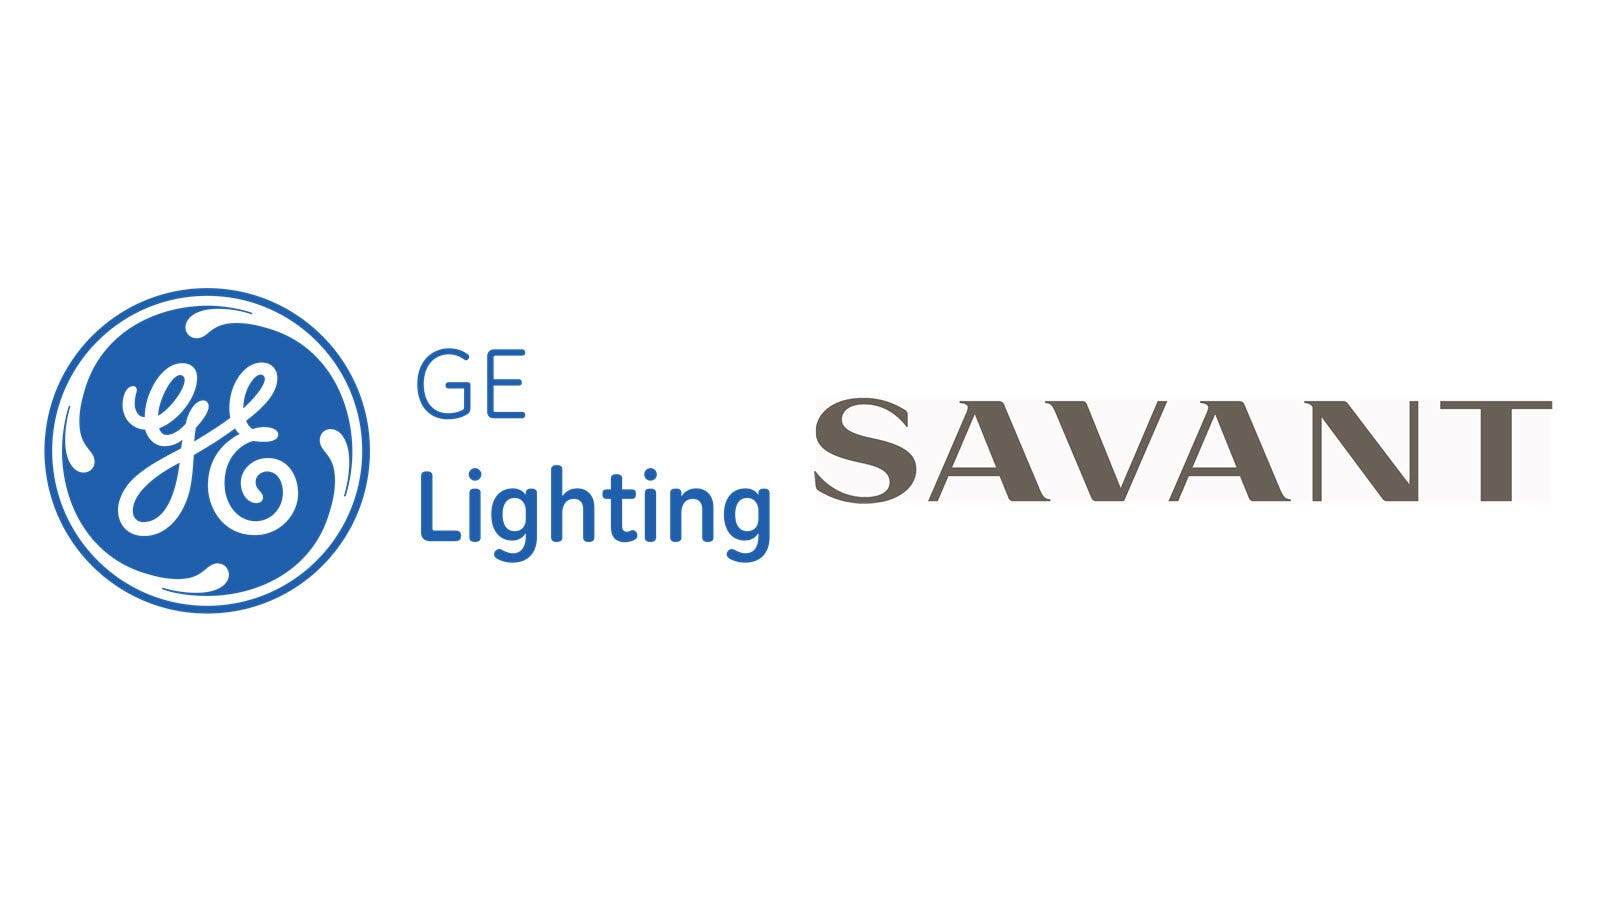 Hệ thống Savant sẽ mua lại GE Lighting, bao gồm cả Hệ thống nhà thông minh của nó